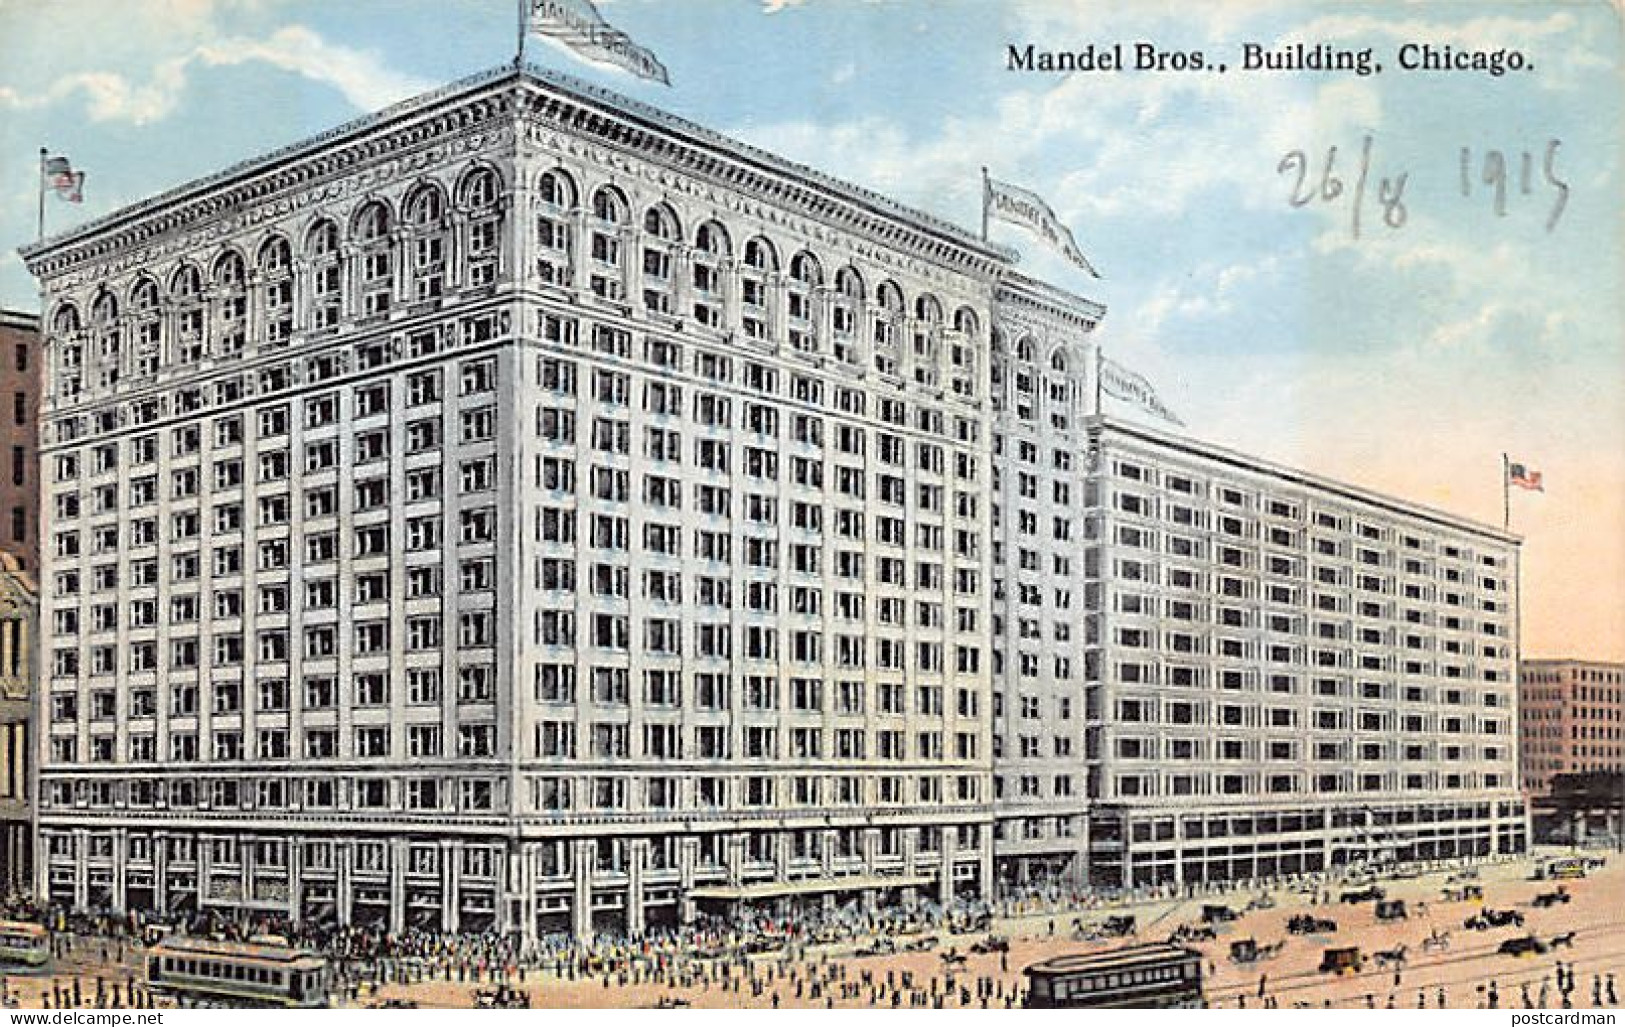 JUDAICA - United States - CHICAGO (IL) - Mandel Bros. Building - Publ. Max Rigot 212 - Jewish